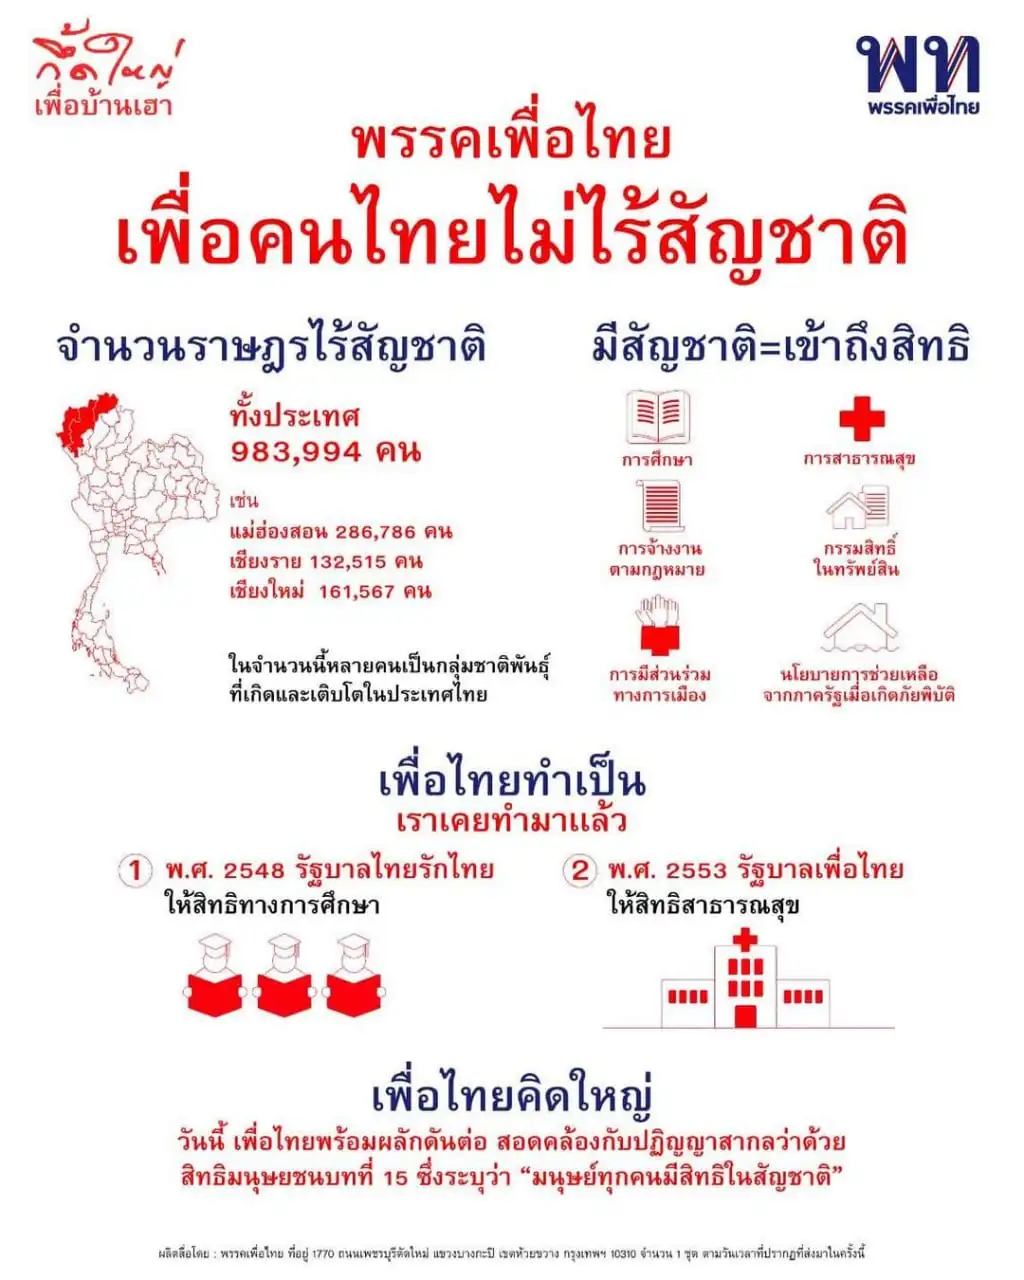 ส่องนโยบายด้านสุขภาพ พรรคเพื่อไทย HealthServ